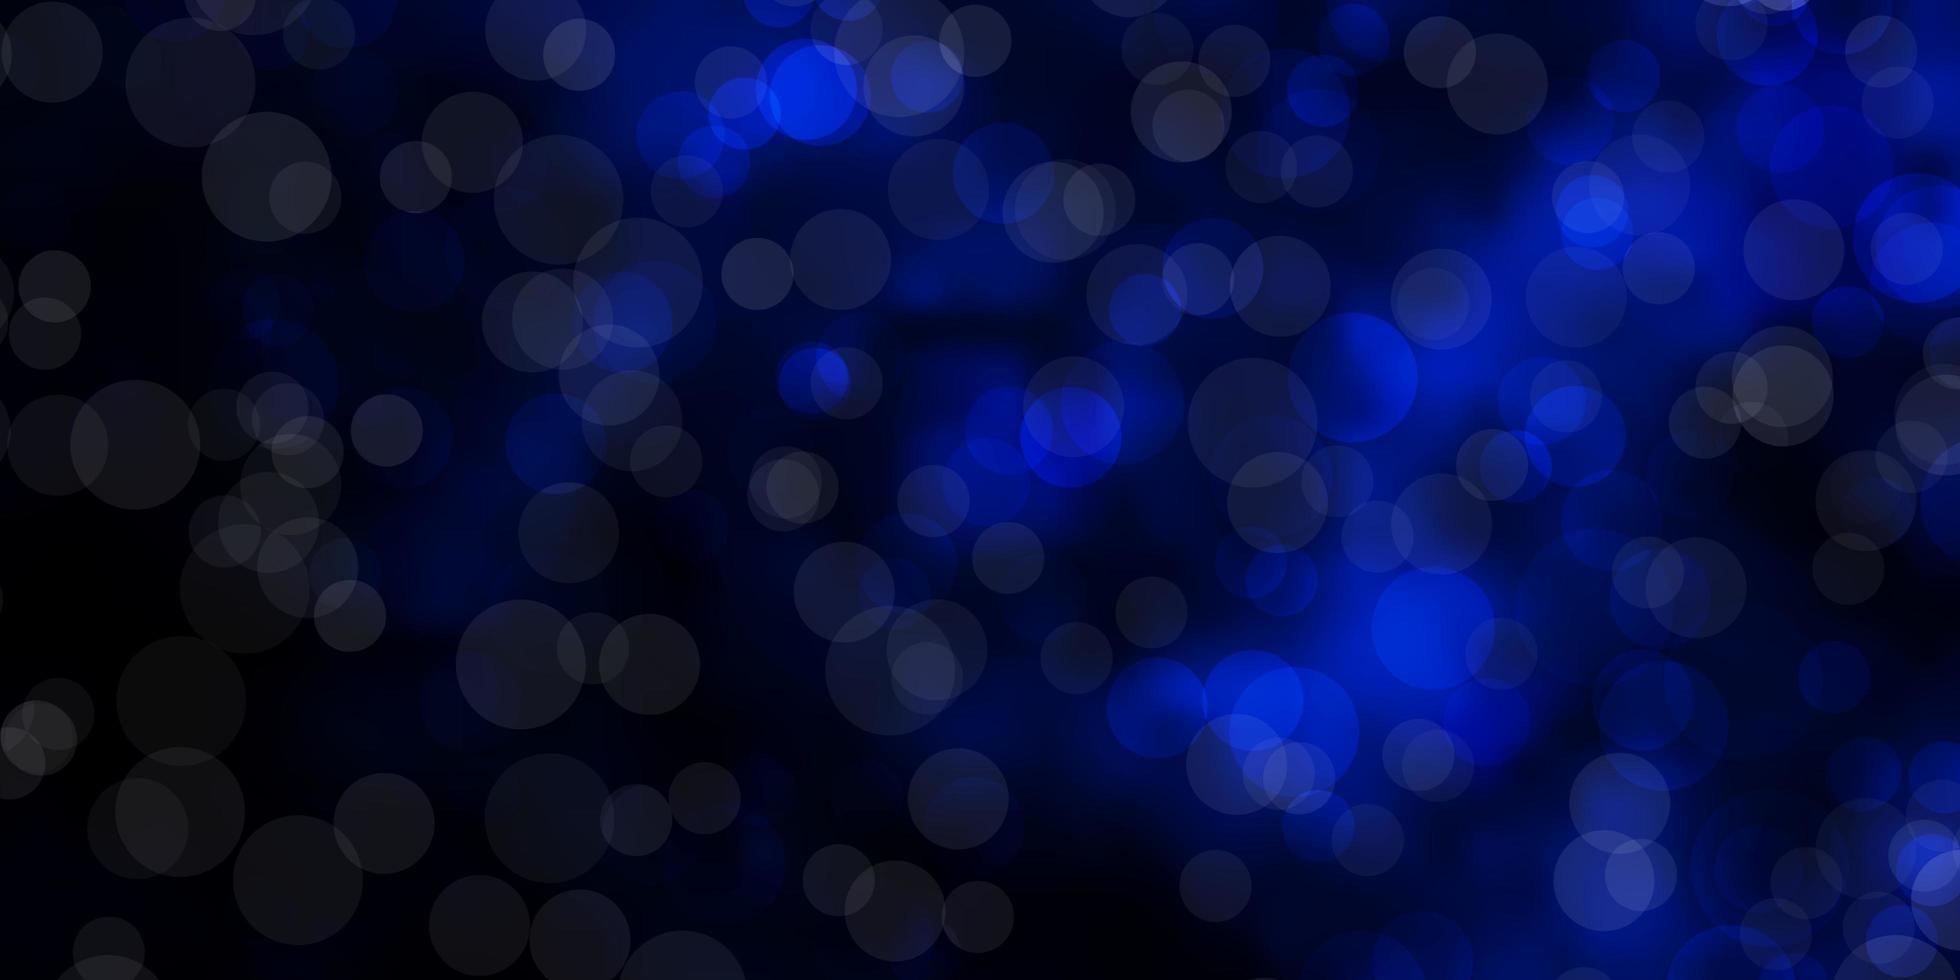 Fondo de vector azul oscuro con círculos. Ilustración abstracta con manchas  de colores en el estilo de la naturaleza. patrón para fondos de pantalla,  cortinas. 2837349 Vector en Vecteezy